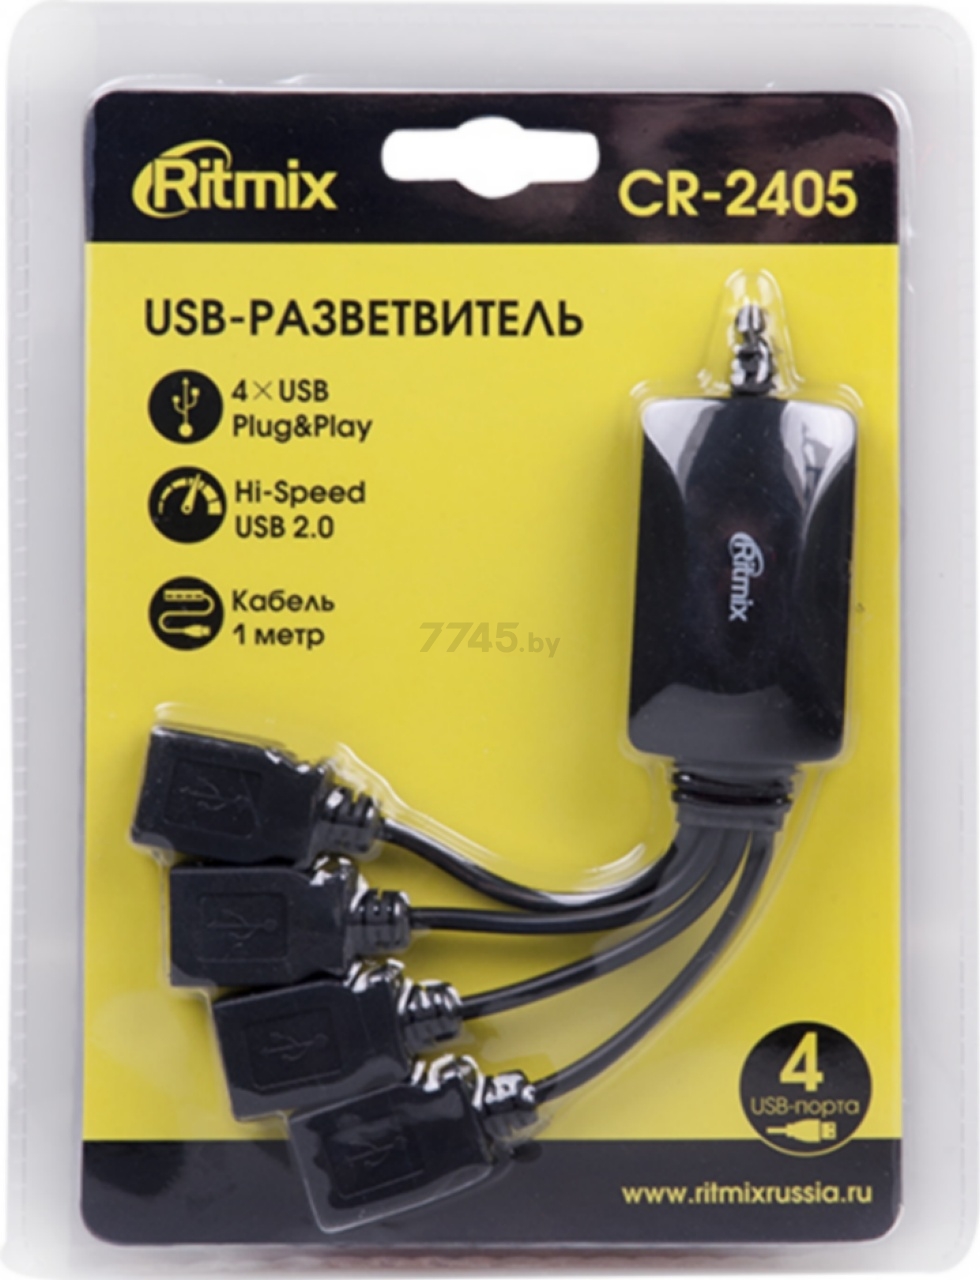 USB-хаб RITMIX CR-2405 - Фото 4